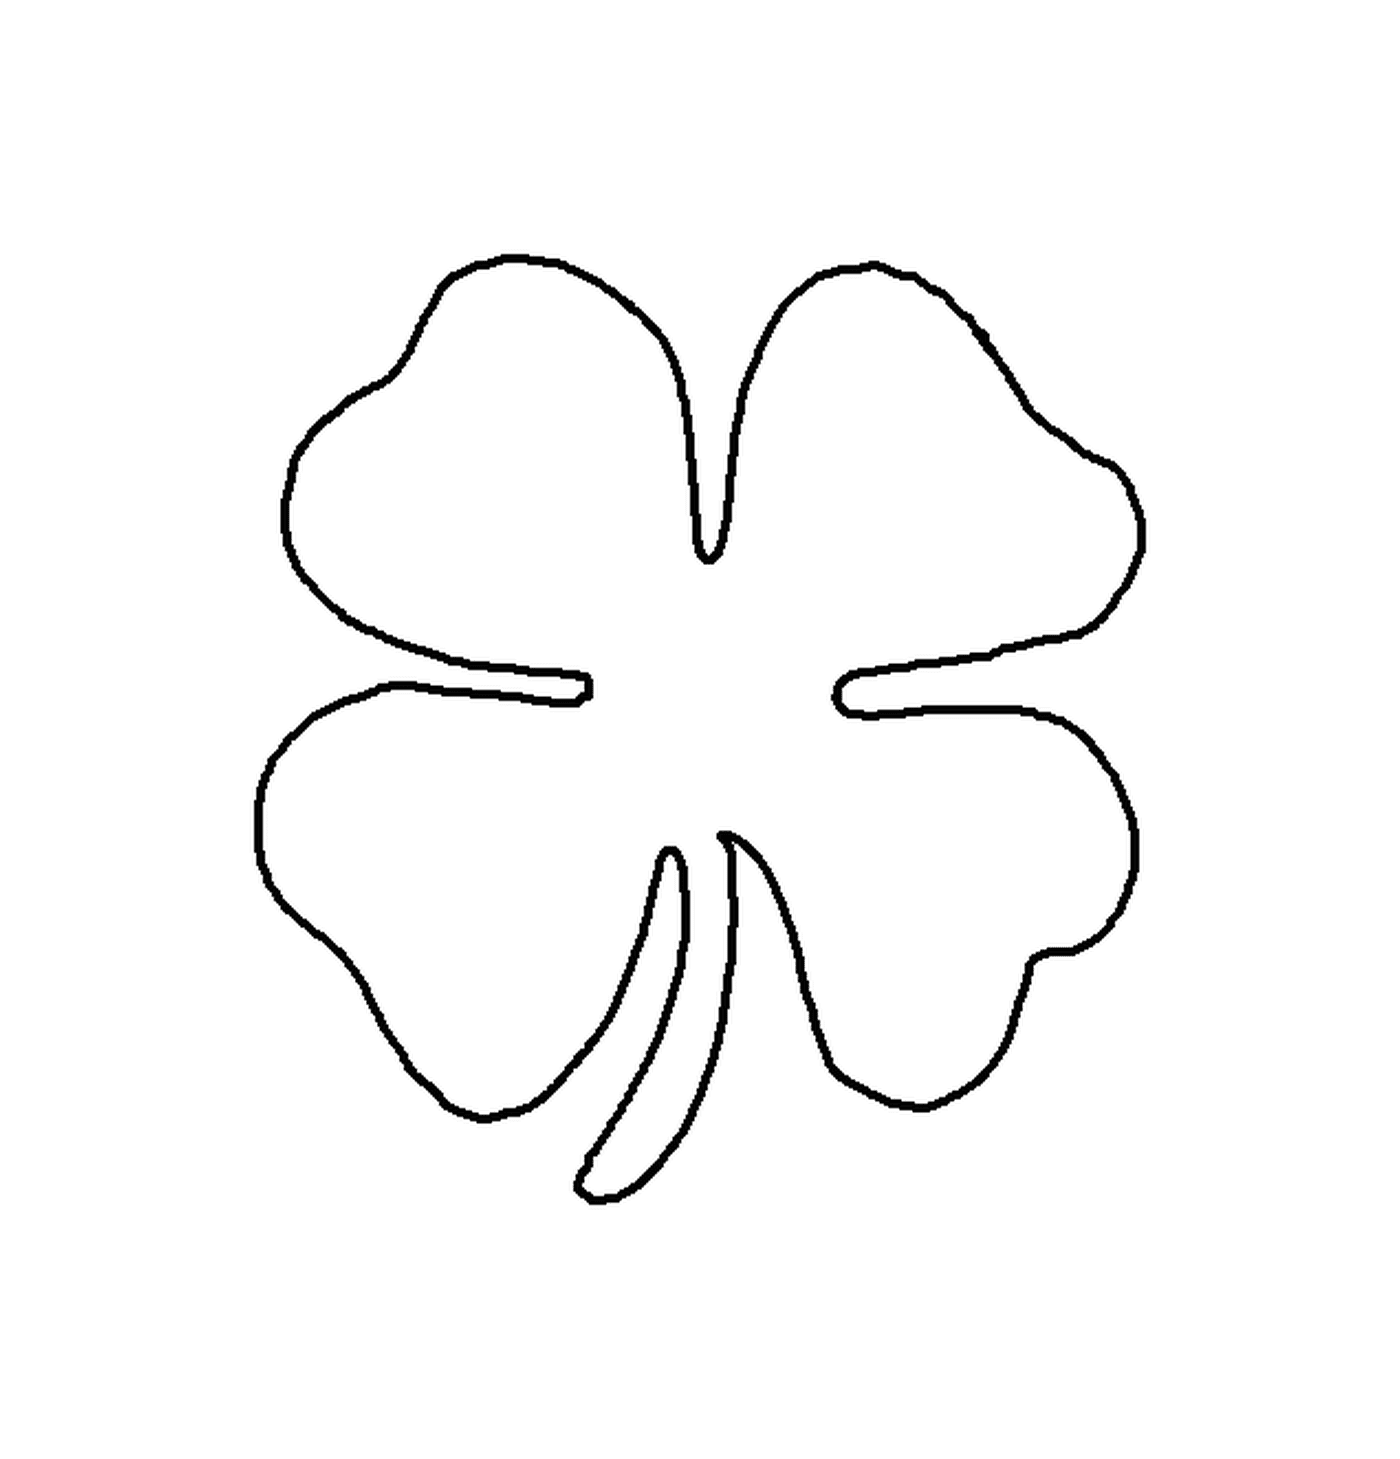   Shamrock, symbole de l'Irlande pour la Saint Patrick 